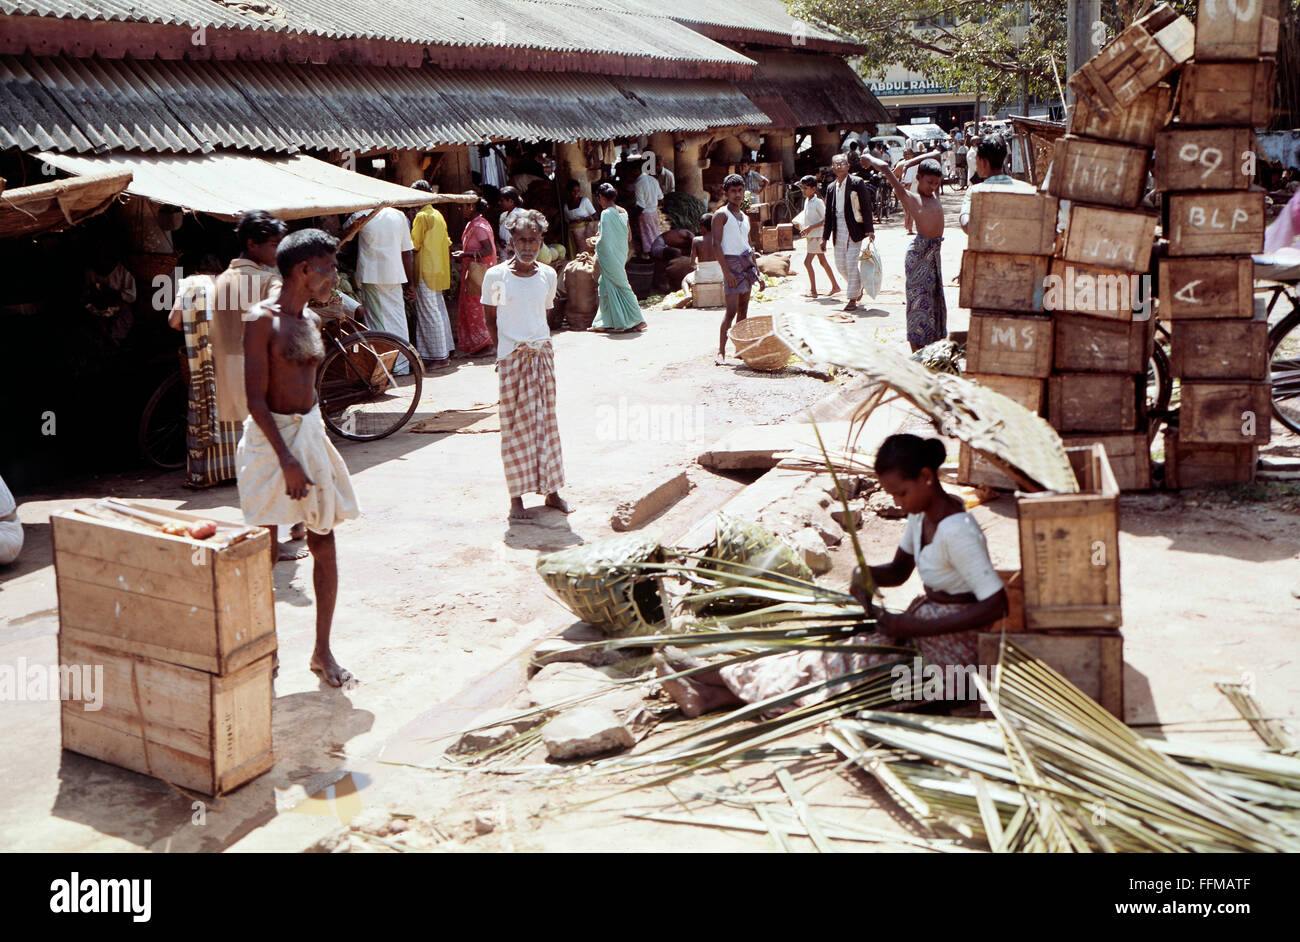 Géographie / voyage, Sri Lanka, Colombo, marchés, femme basket, années 1970, droits supplémentaires-Clearences-non disponible Banque D'Images